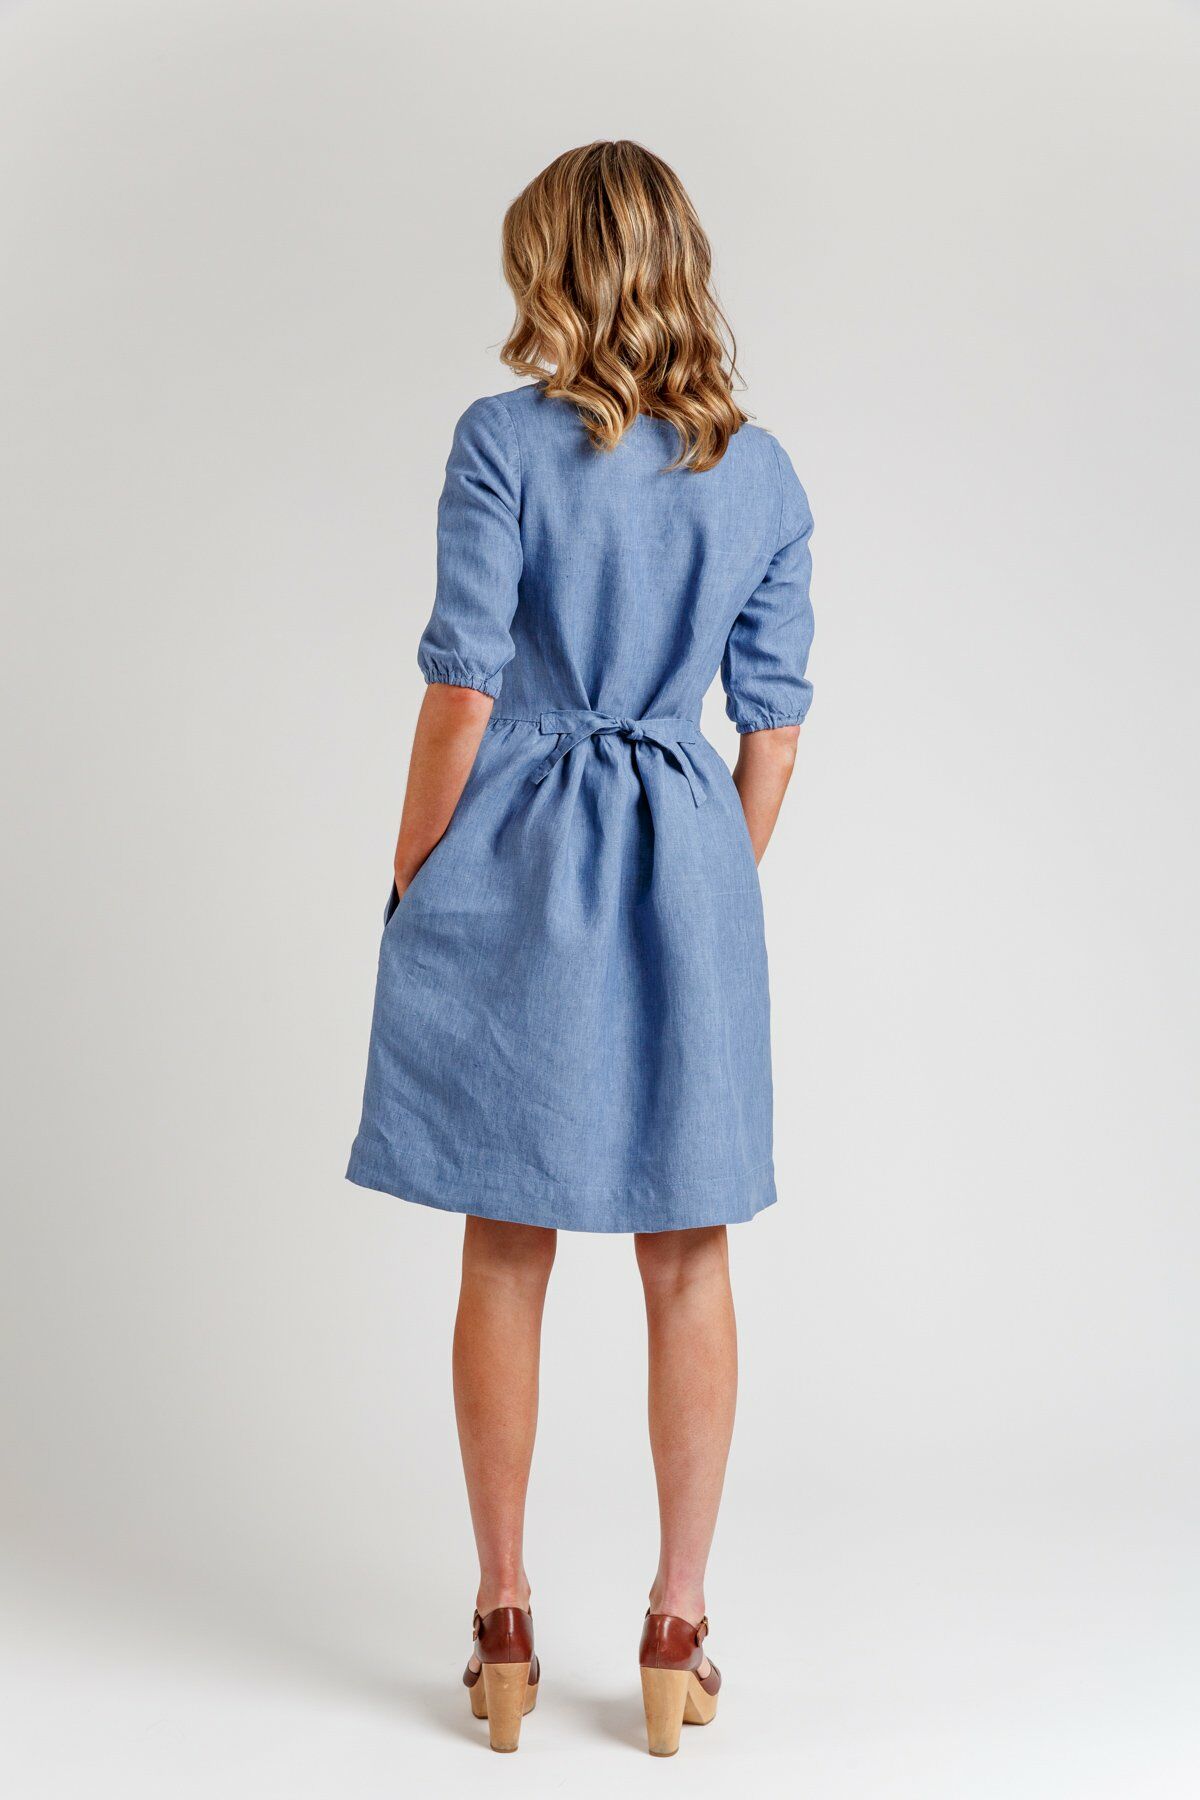 Megan Nielsen Matilda Dress | Harts Fabric